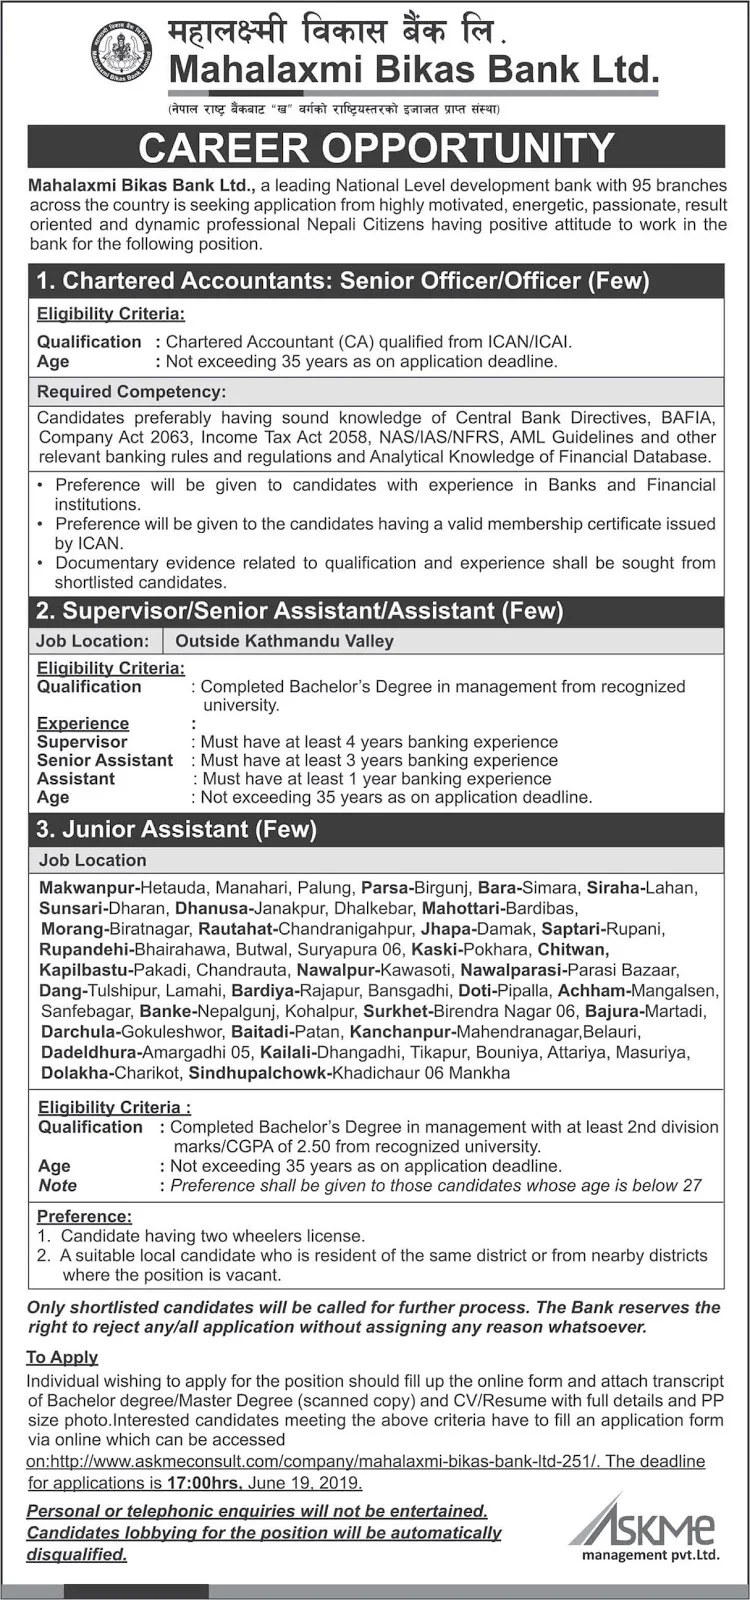 Vacancies at Mahalaxmi Bikas Bank Ltd.